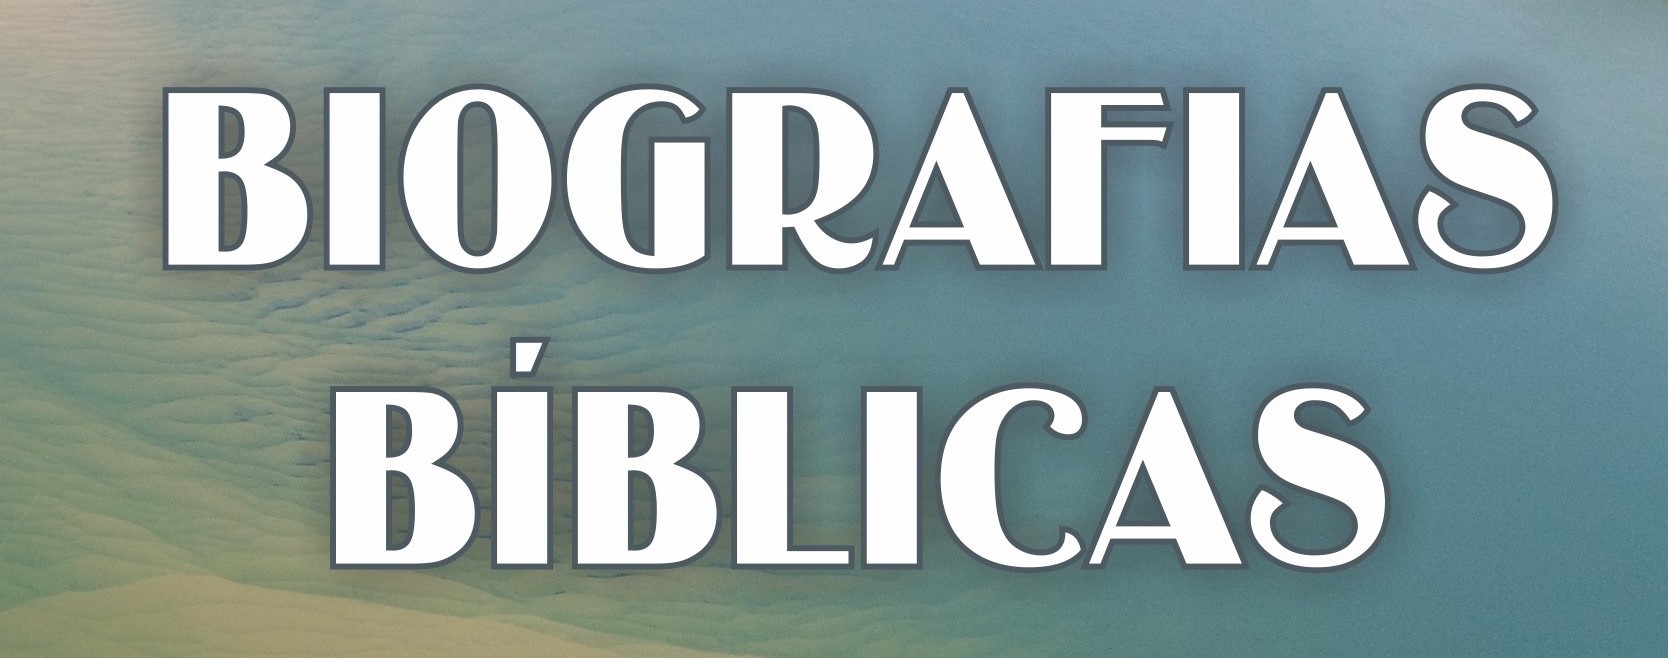 Capa Biografias Bíblicas_AT_corte